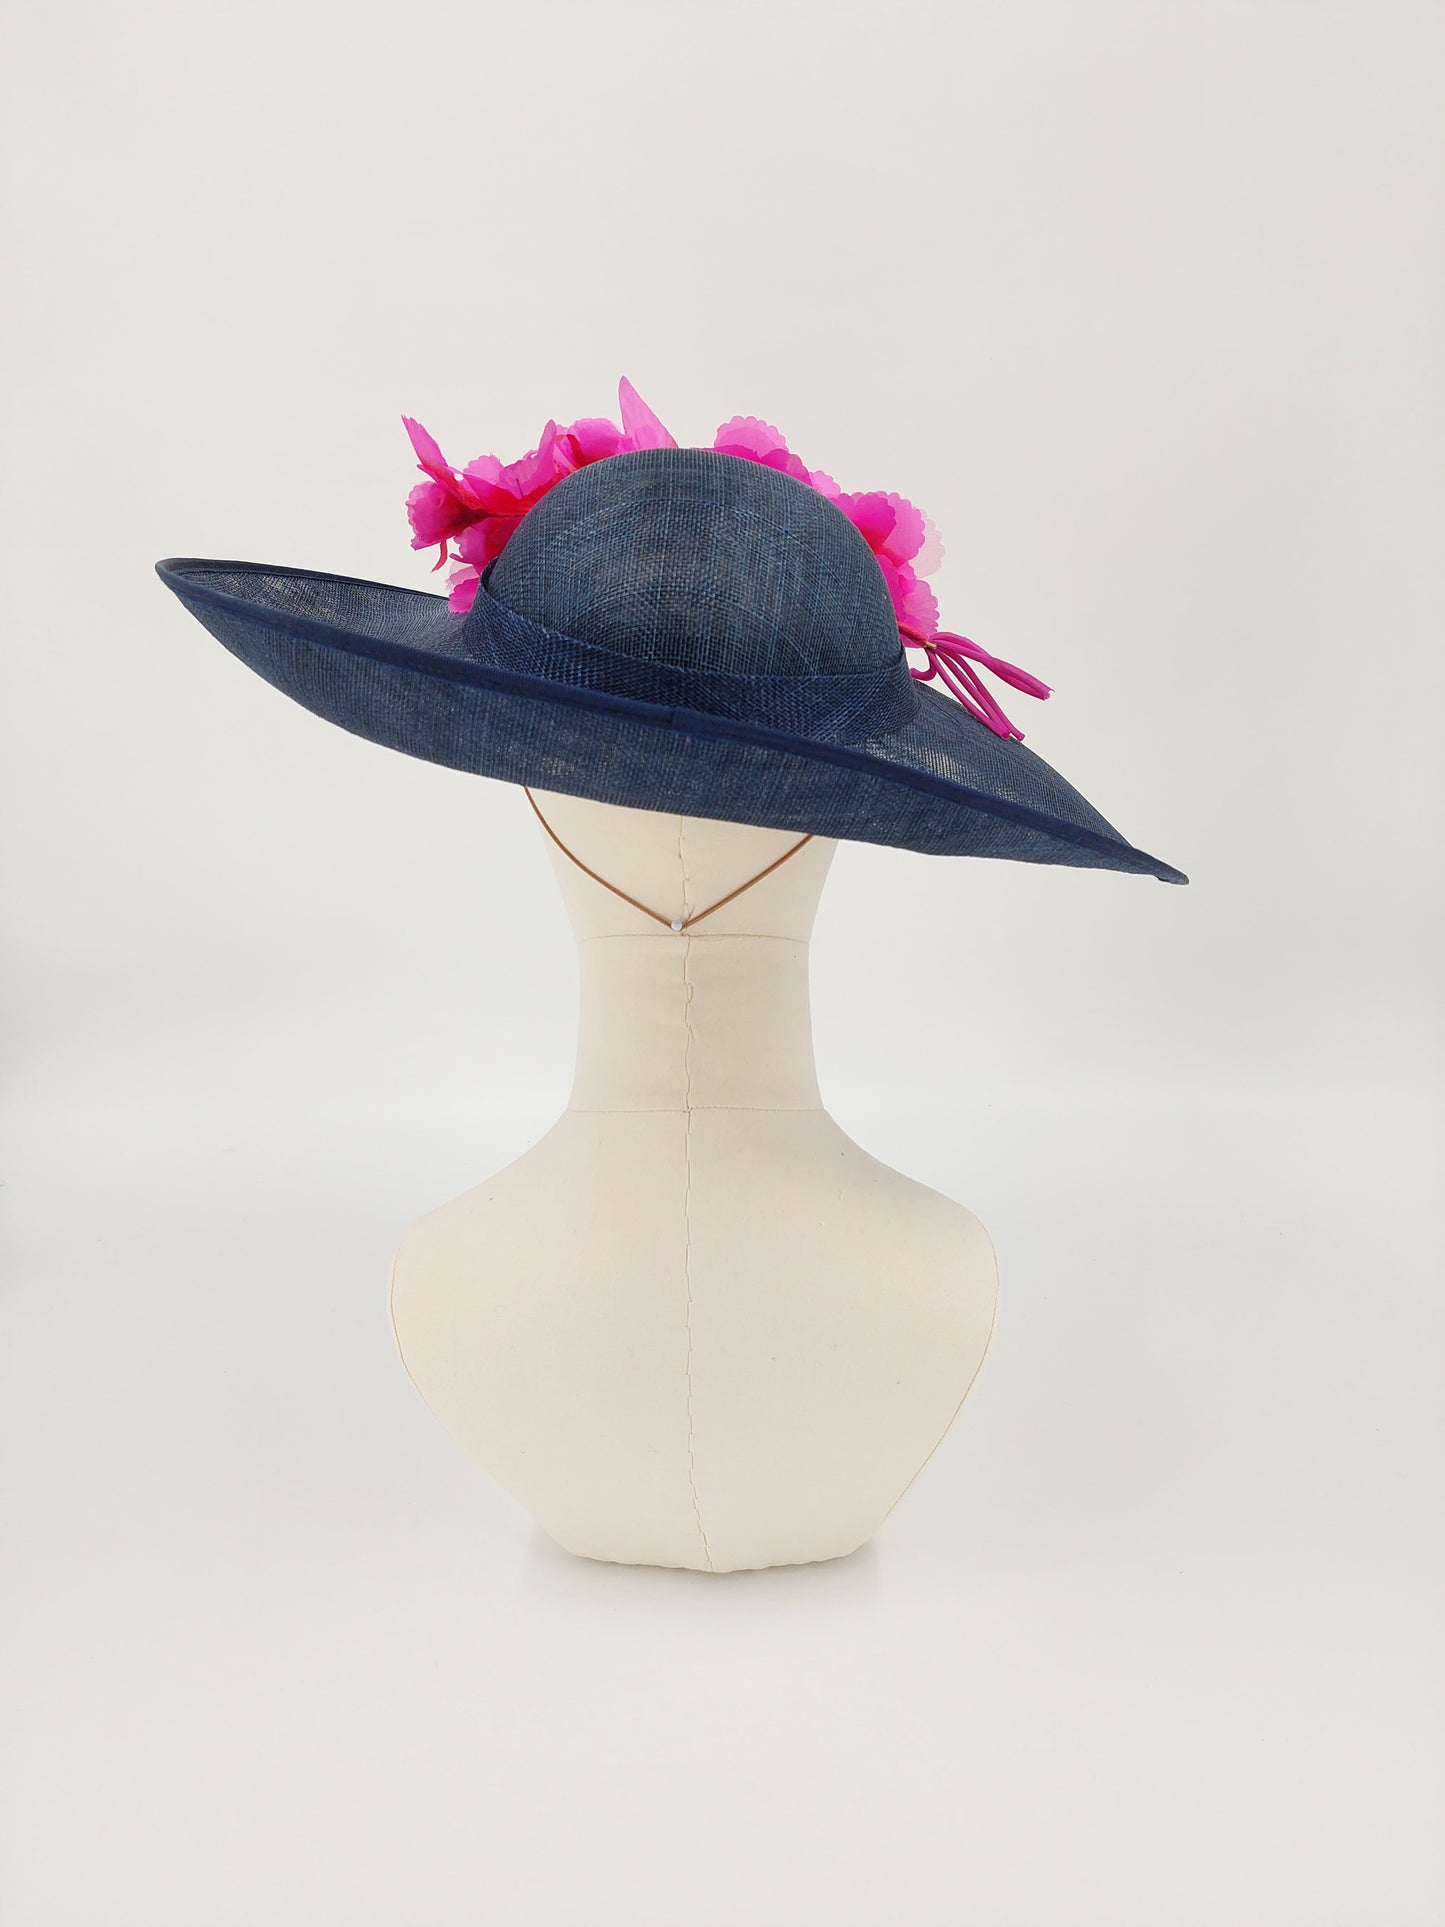 Hat Haven Millinery - Custom hat maker in Louisville, Kentucky. Kentucky Derby hats, fascinators, Ascot hats, wedding hats, church hats, dress hats, fancy hats, milliner, custom hats, Derby hats in Louisville.